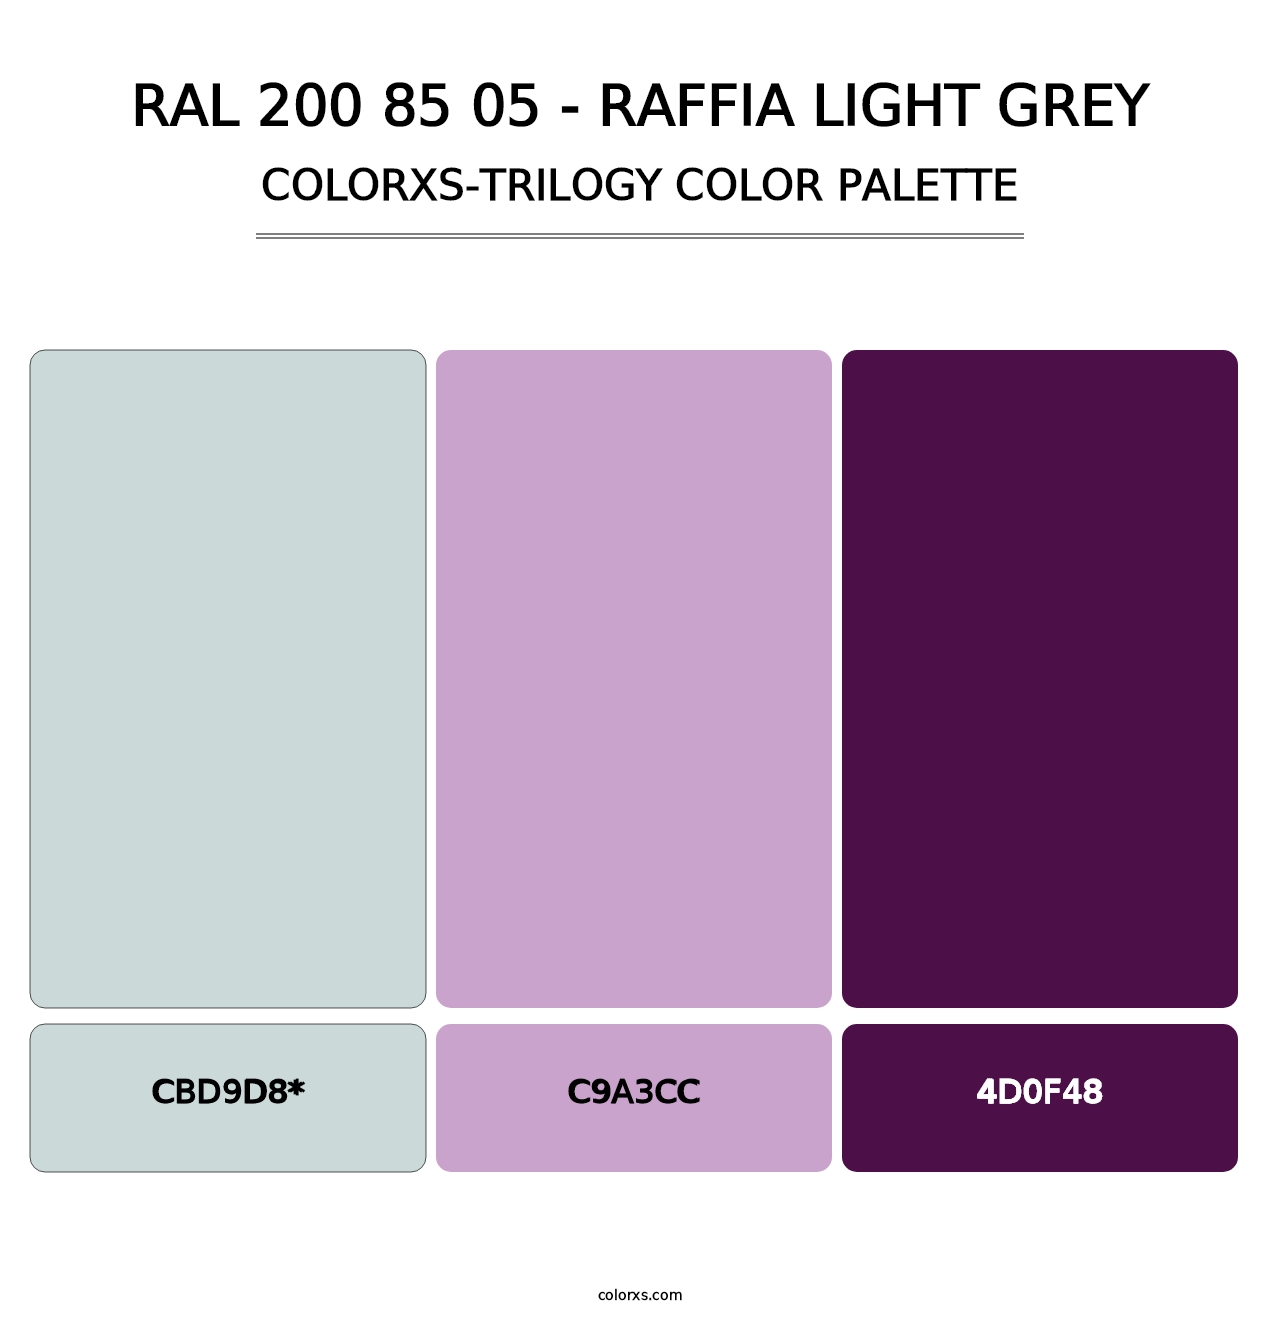 RAL 200 85 05 - Raffia Light Grey - Colorxs Trilogy Palette